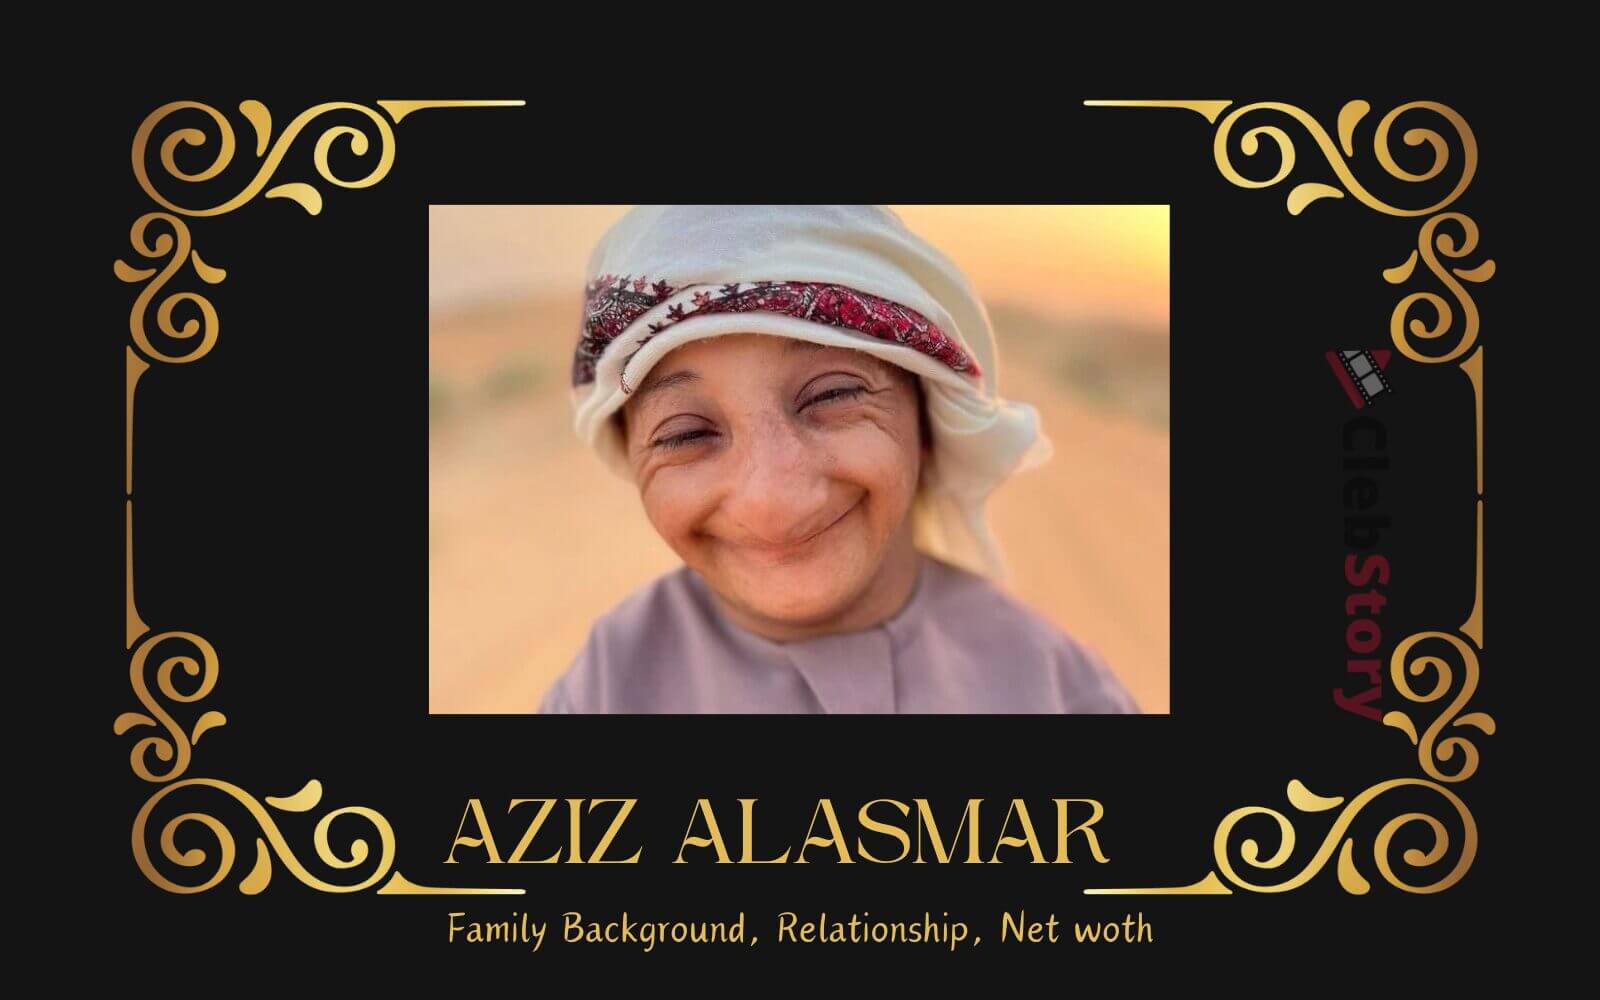 Who is Aziz alasmar